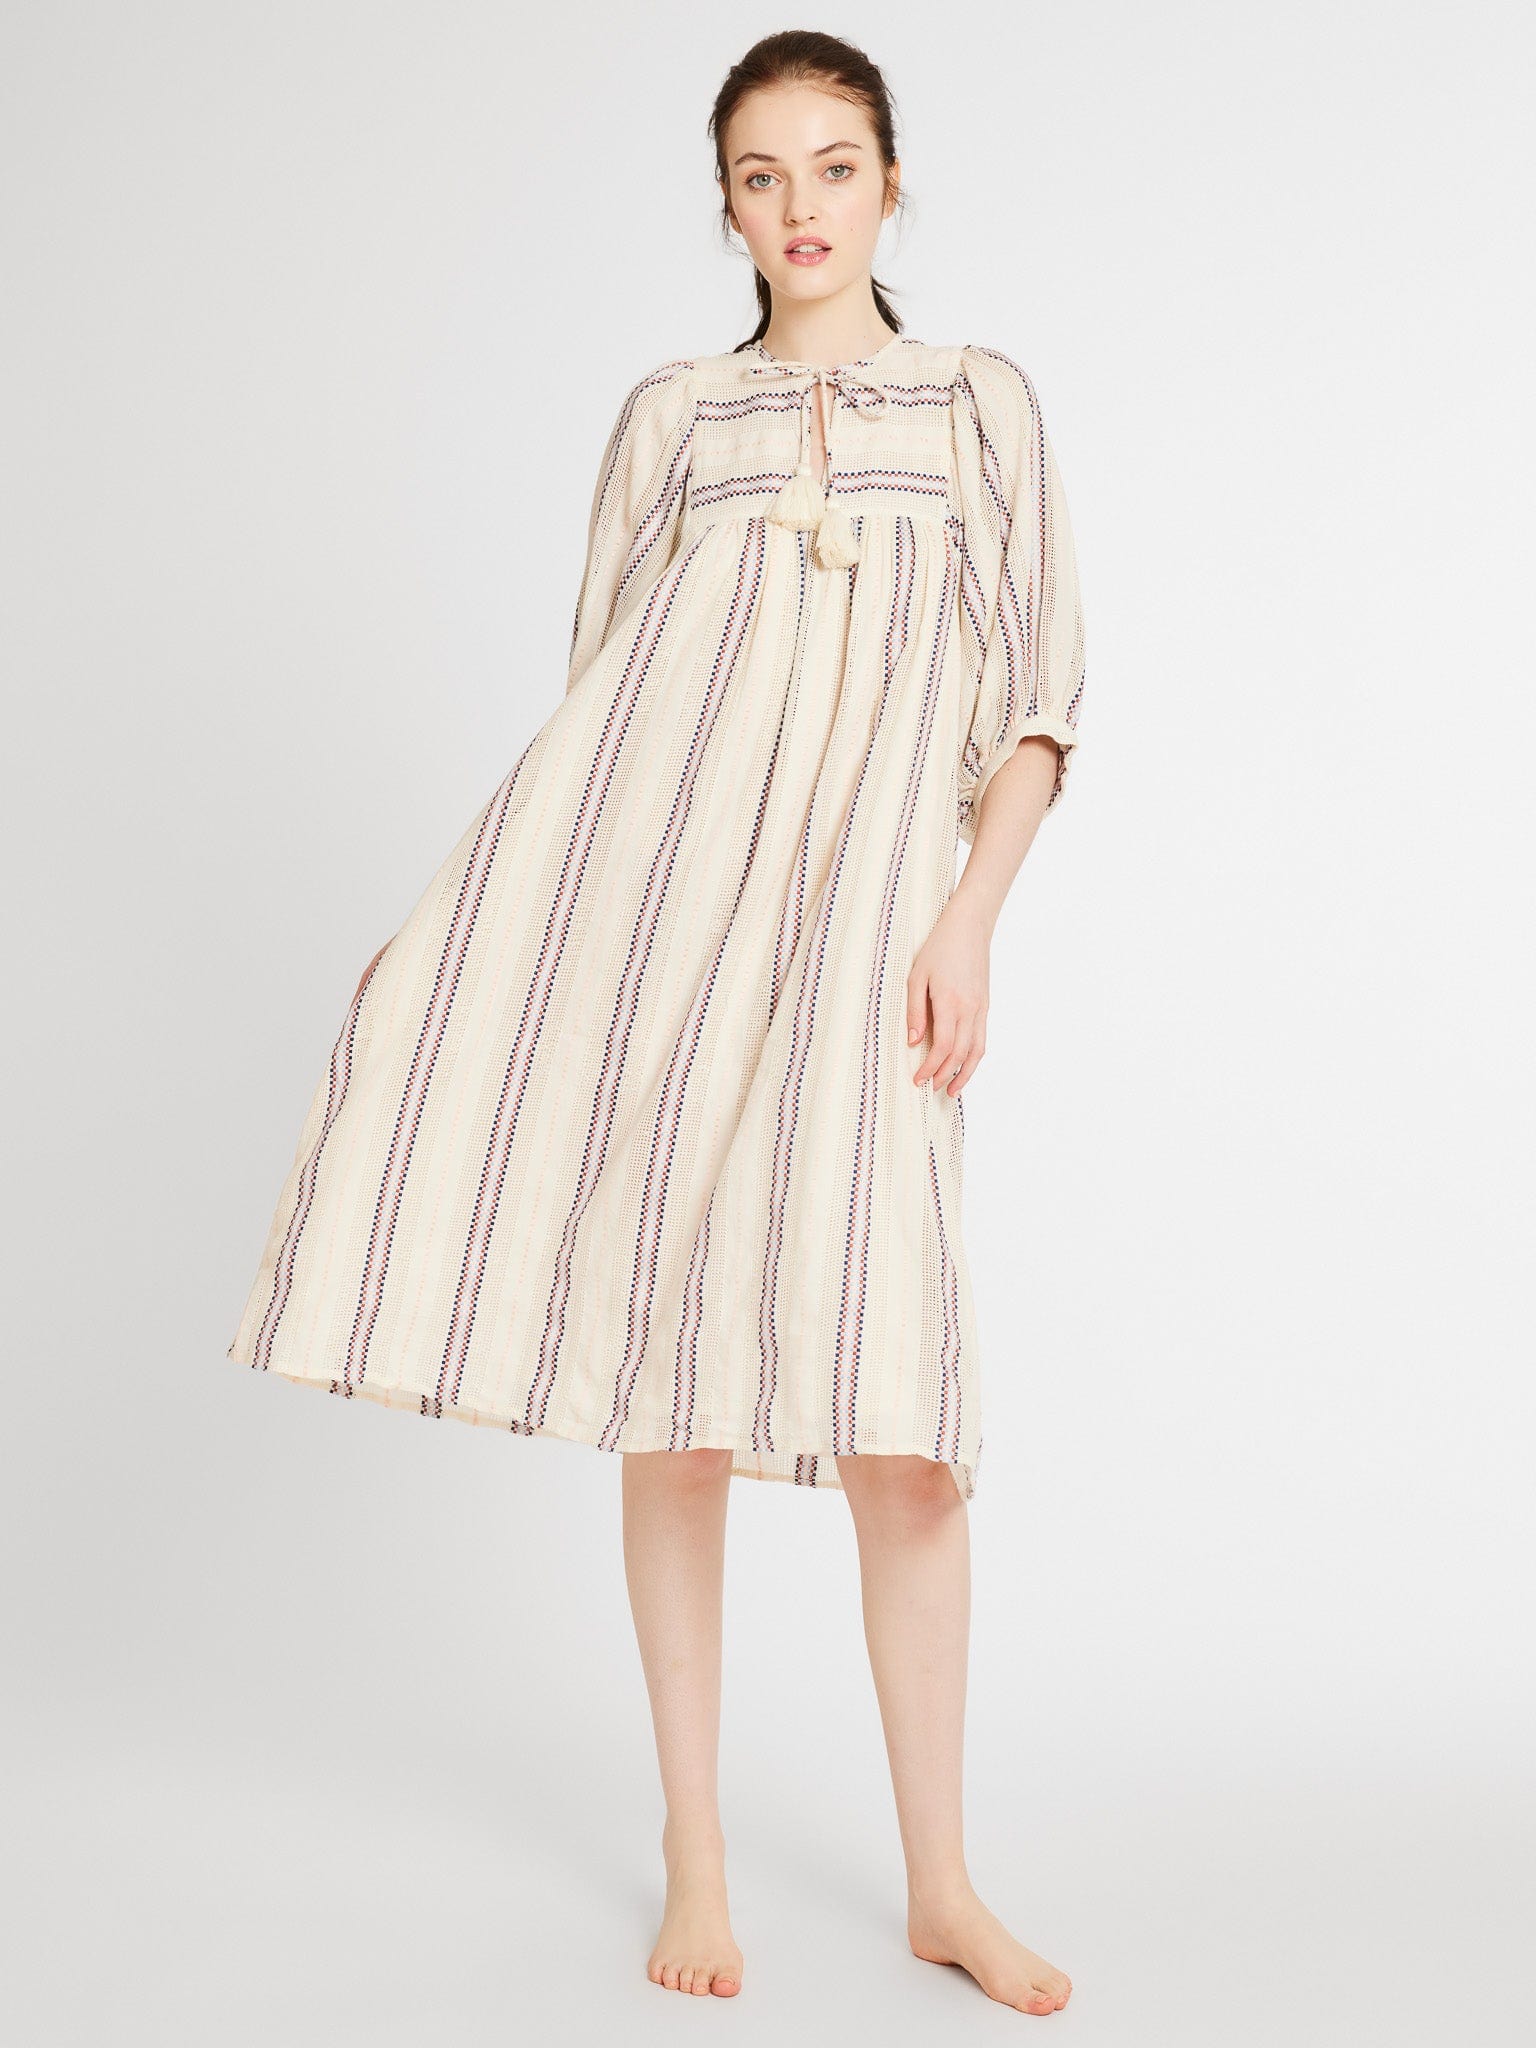 MILLE Clothing Saffron Dress in O&#39;Keeffe Stripe